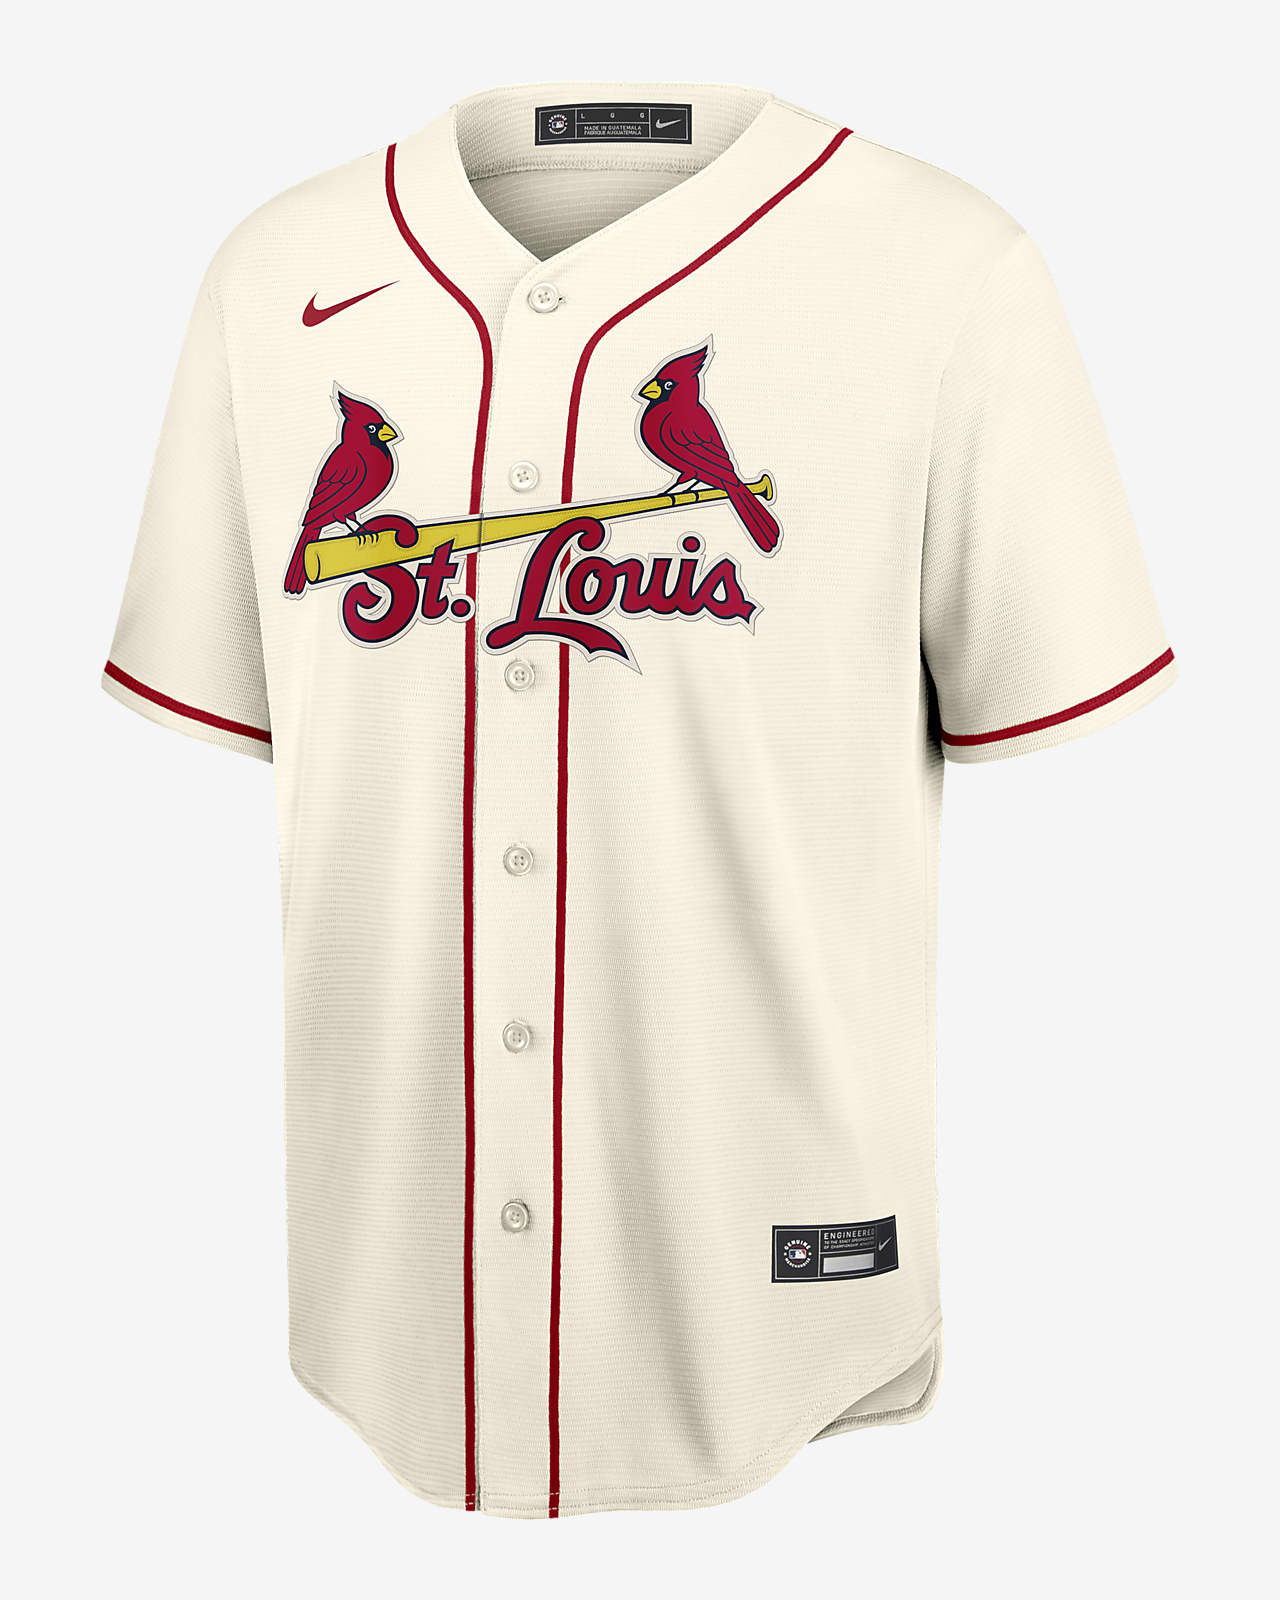 cardinals jersey molina